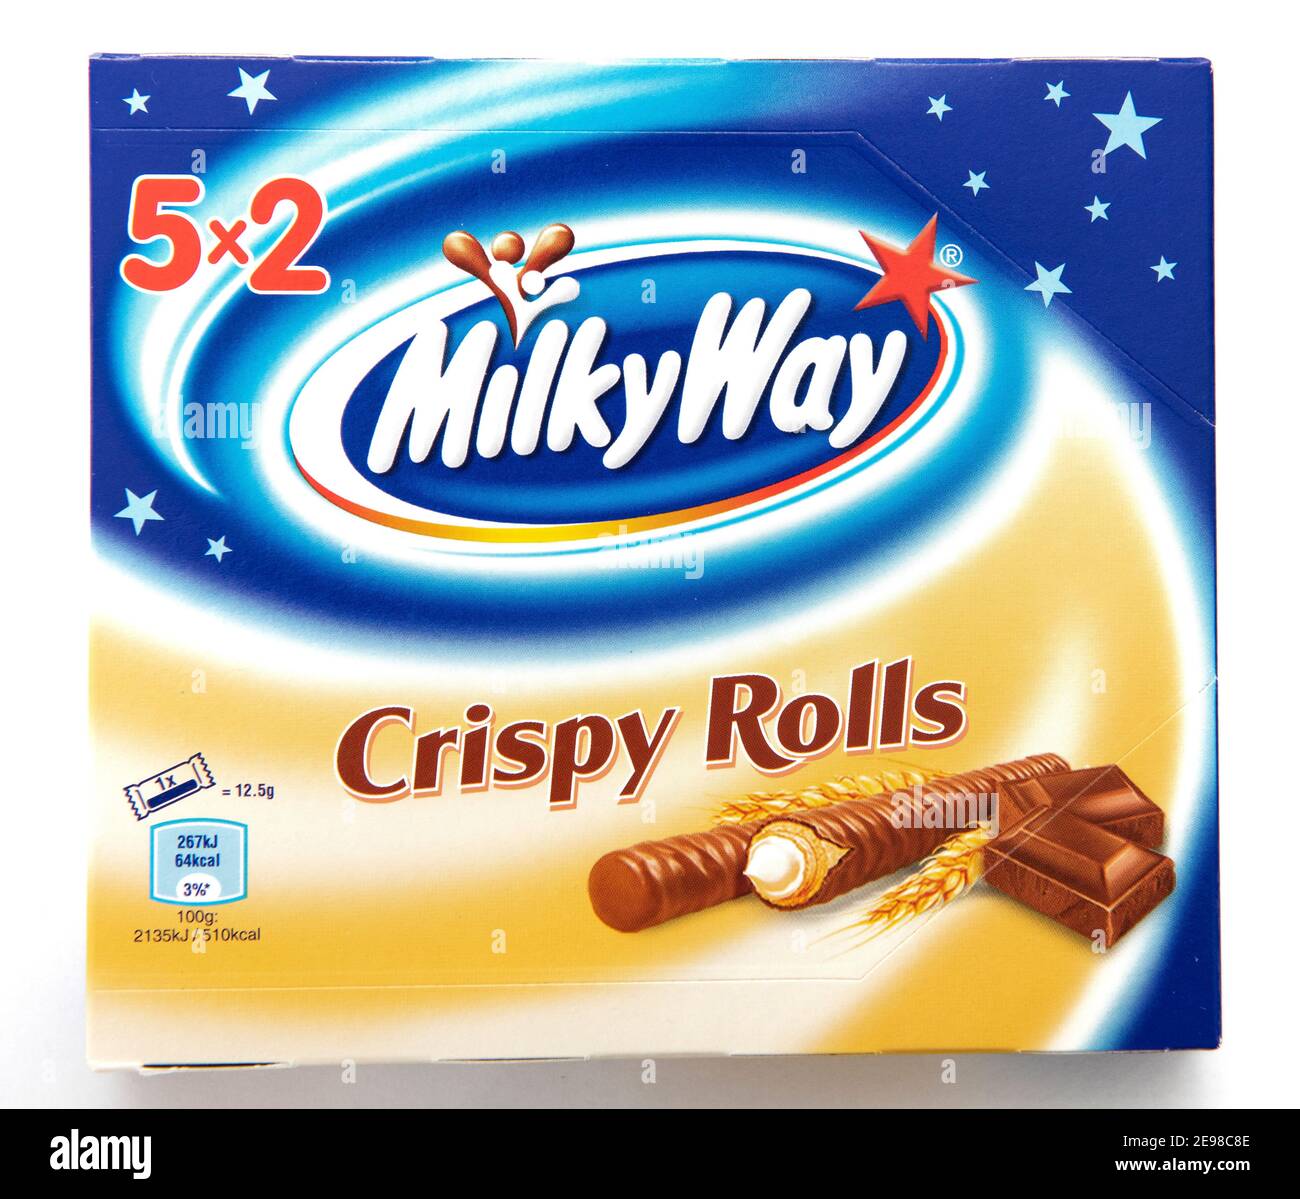 Milky way Crispy rolls Stock Photo - Alamy